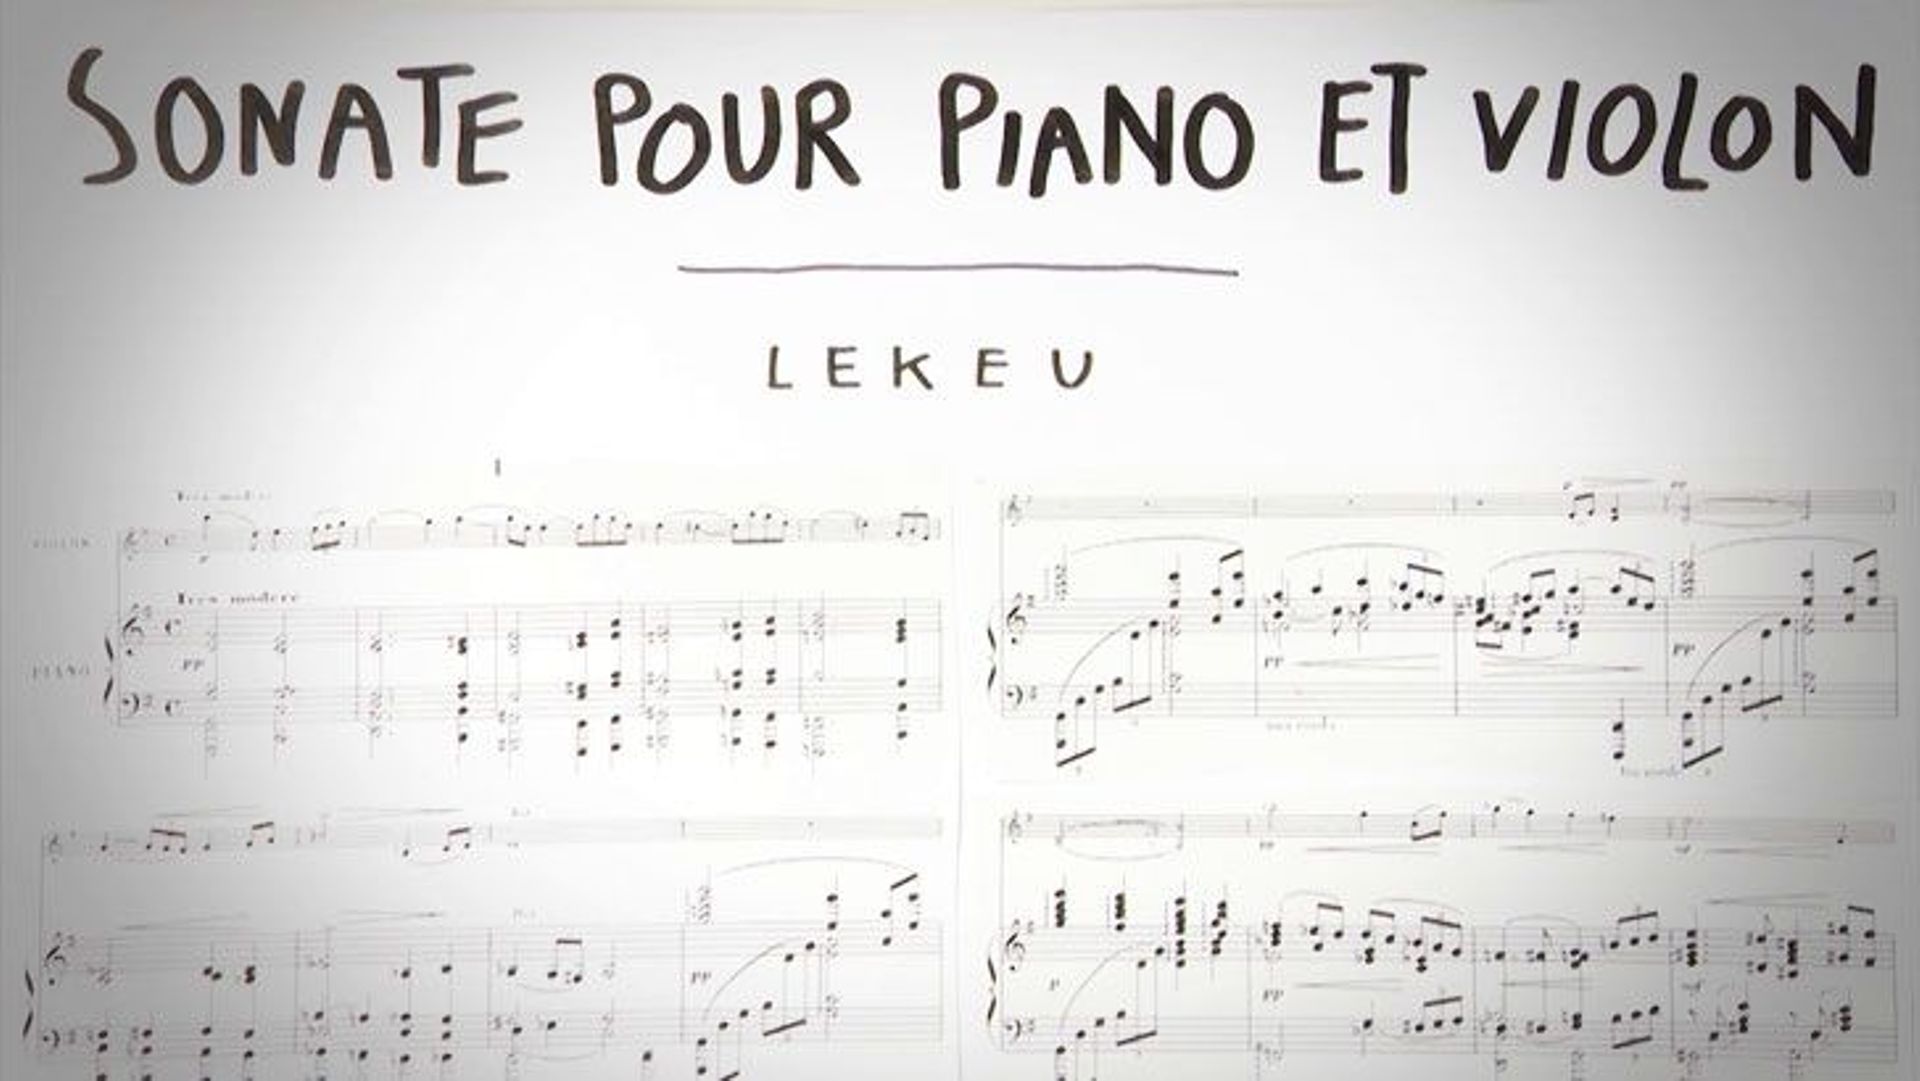 Je Sais Pas Vous de Patrick Leterme : LEKEU - Sonate pour violon et piano